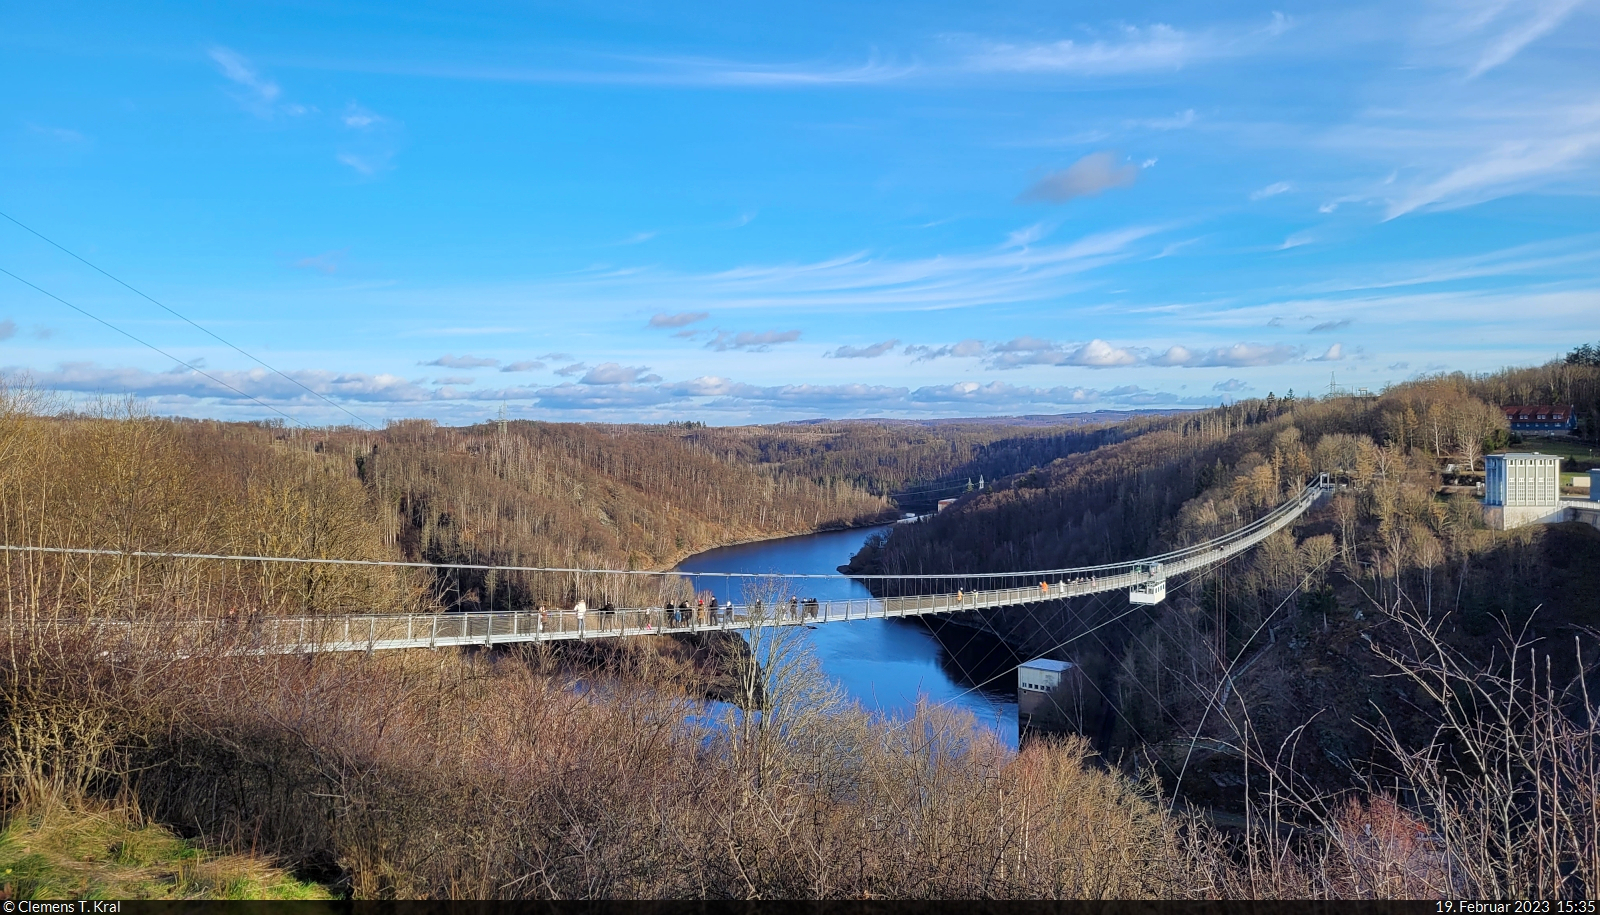 Die 2017 eröffnete und 483 Meter lange Hängebrücke an der Rappbode-Talsperre lockt viele Besucher an. 

🕓 19.2.2023 | 15:35 Uhr